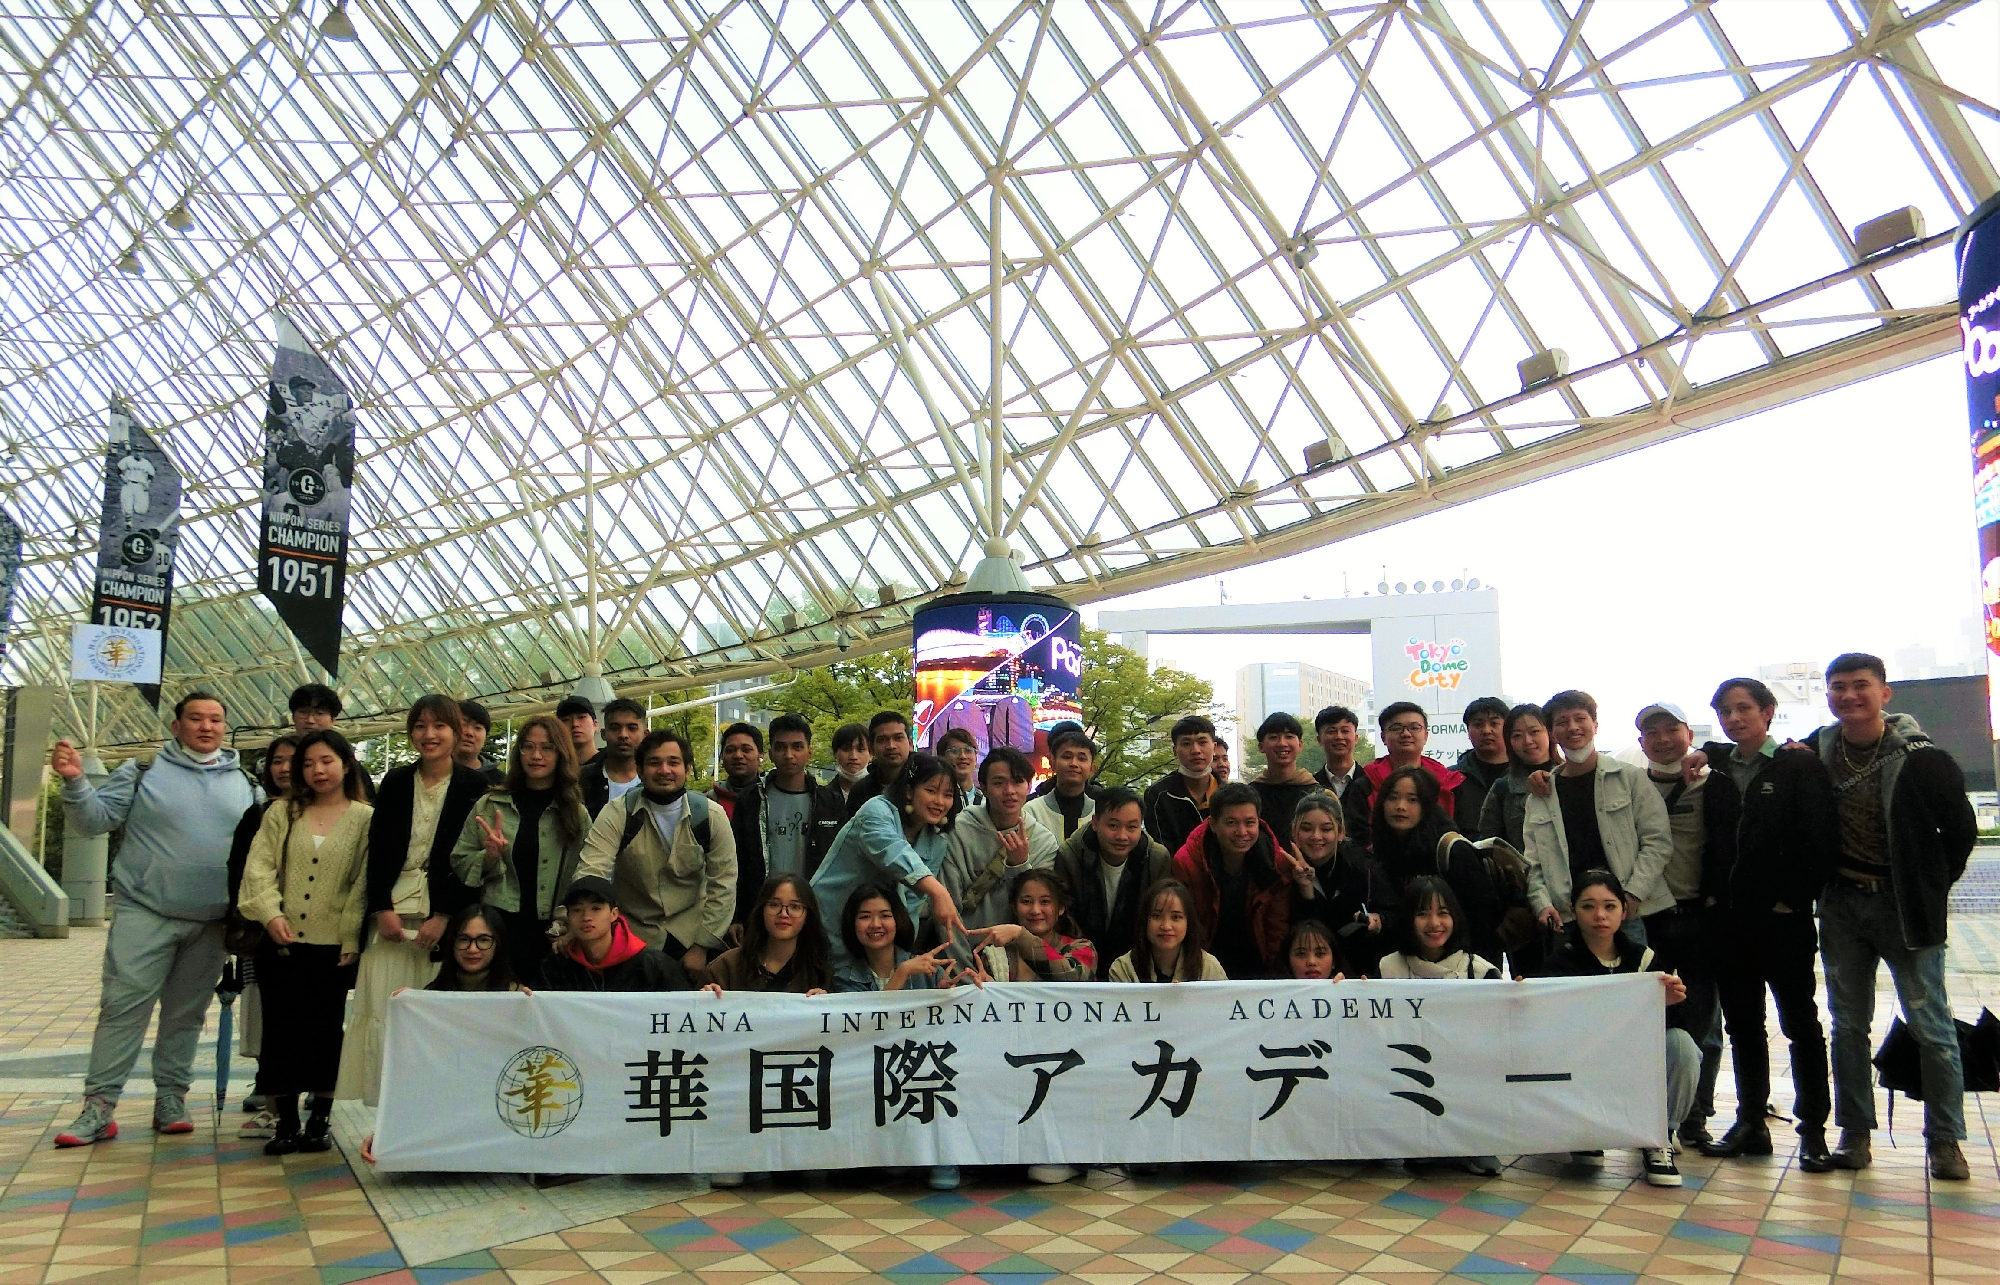 東京ドームシティに行きました。 School trip in 2022: We traveled to Tokyo Dome city